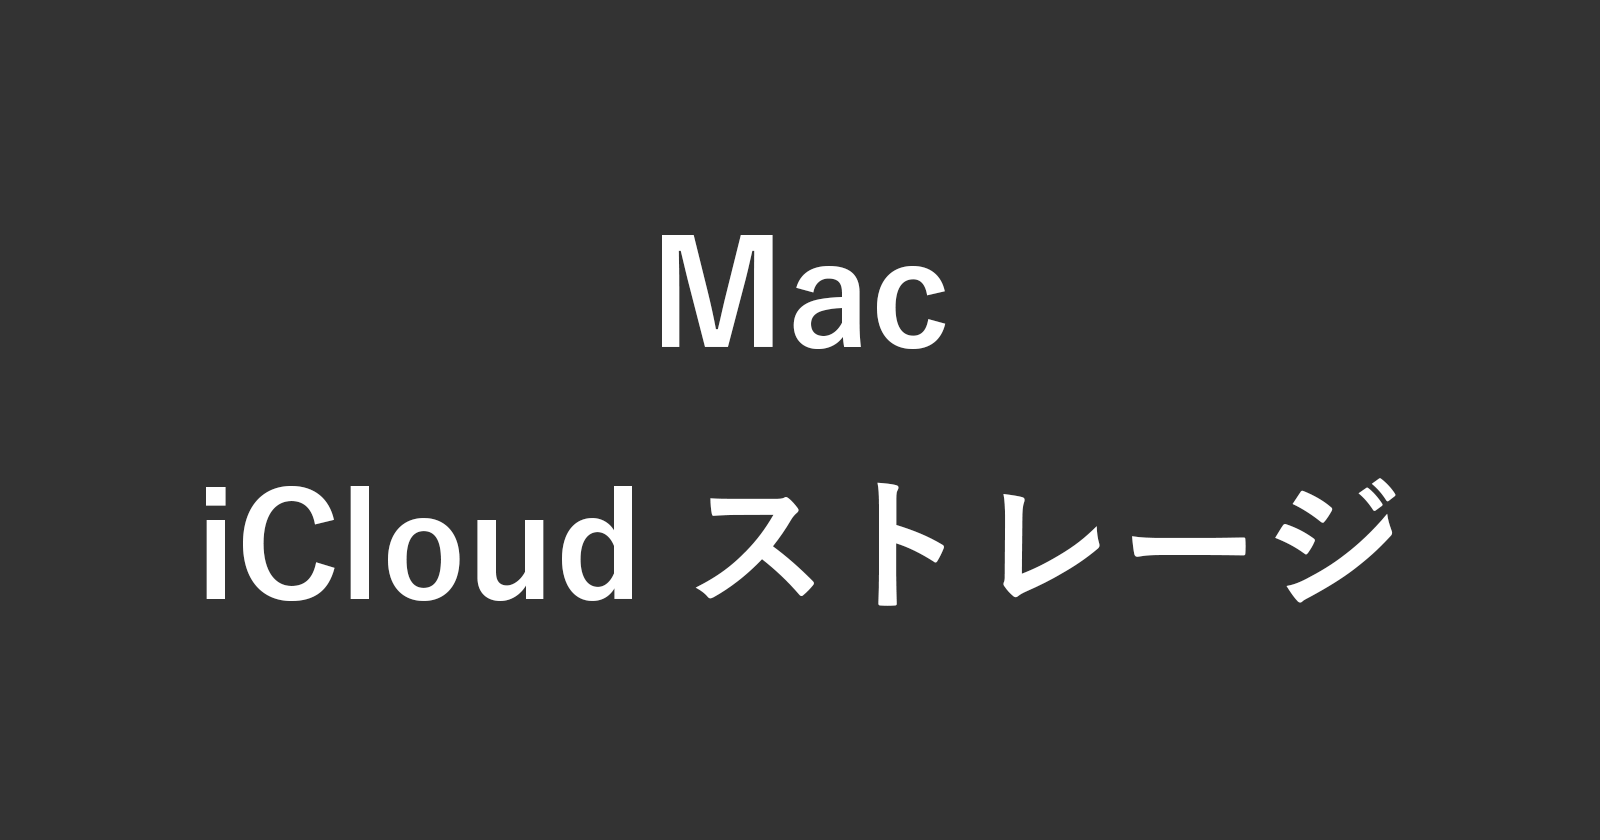 mac icloud storage